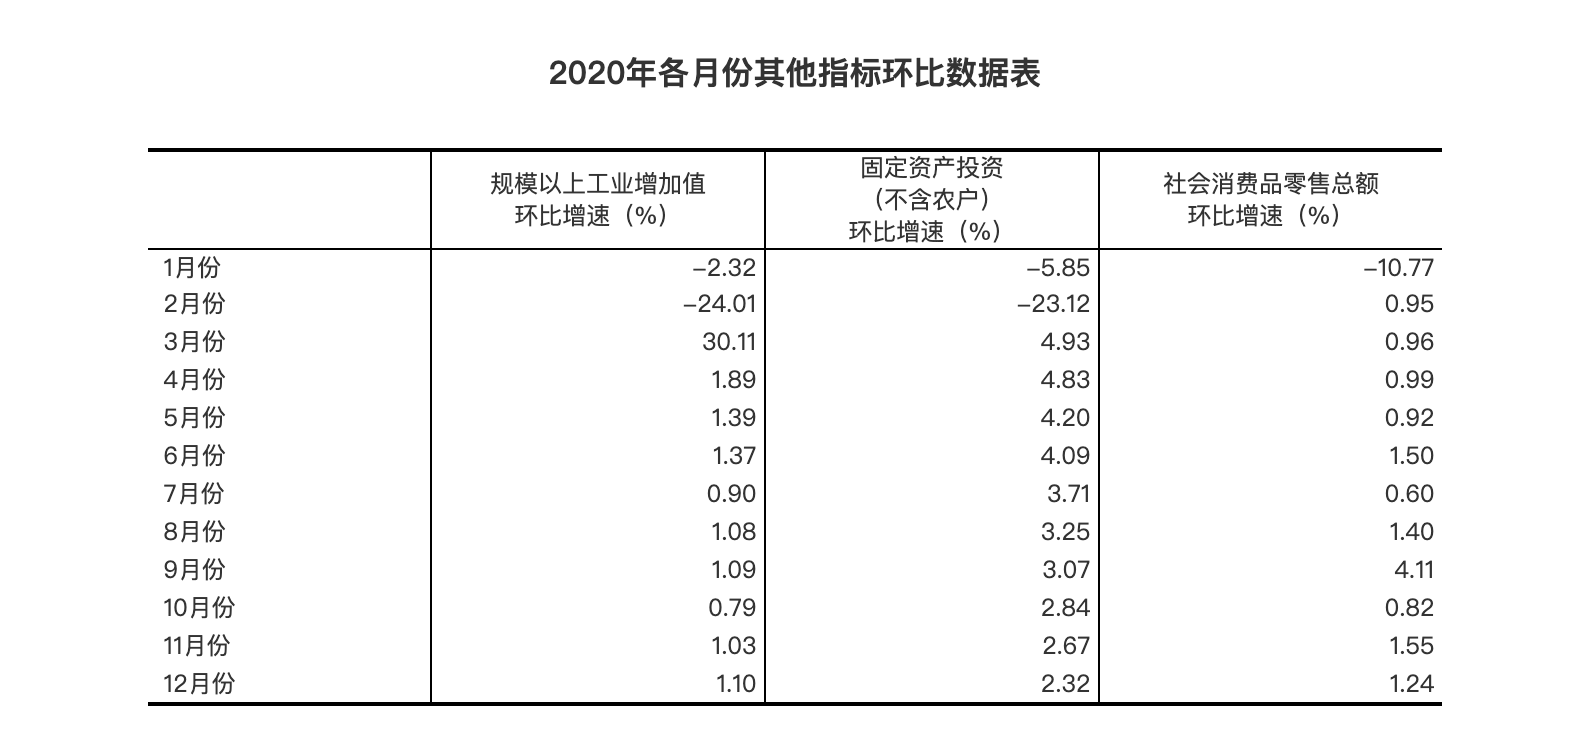 2020年國民經濟穩定恢復 主要目標完成好于預期-中國網地産